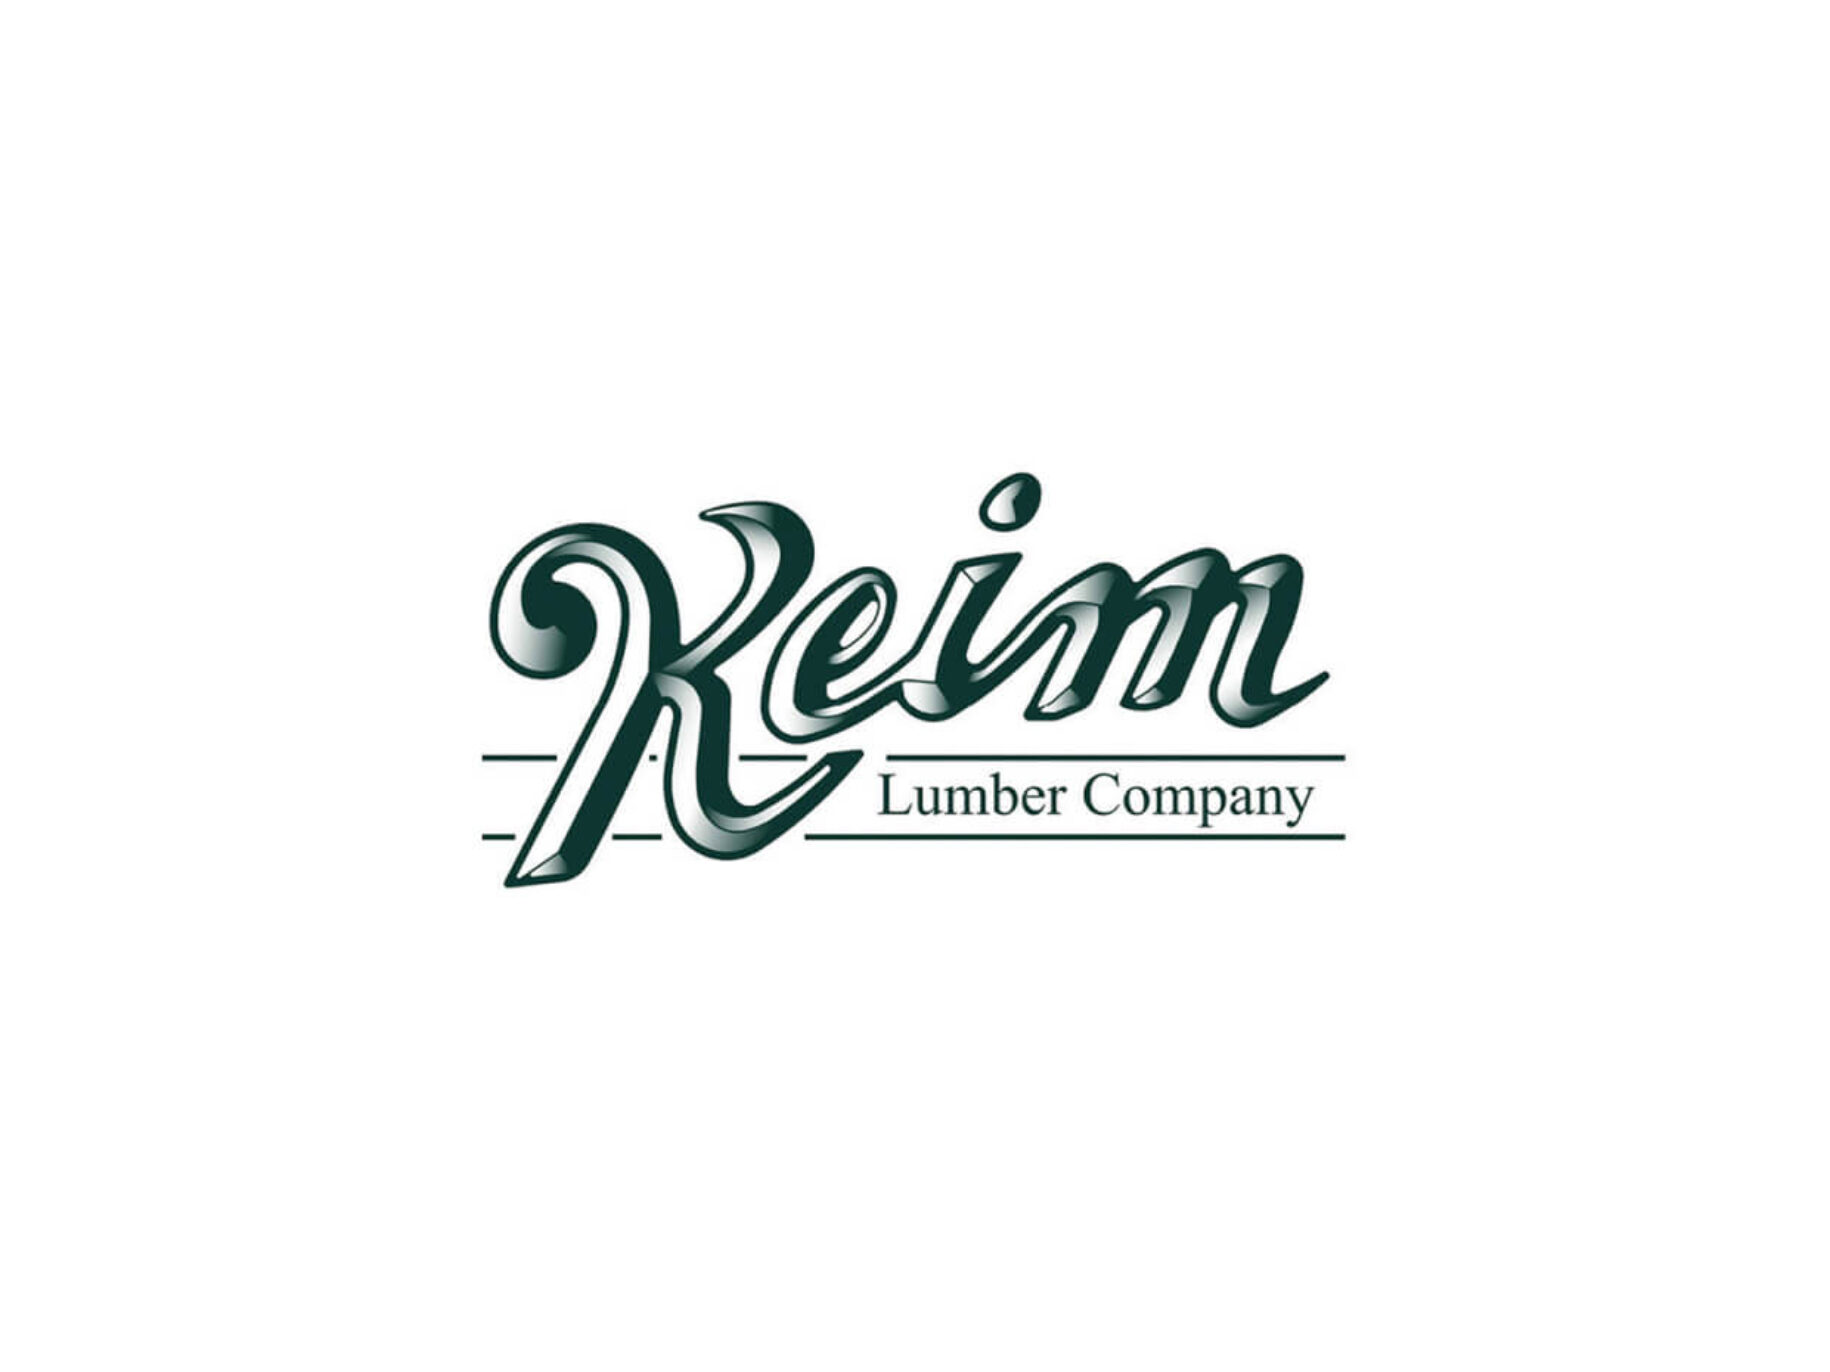 Keim's original logo